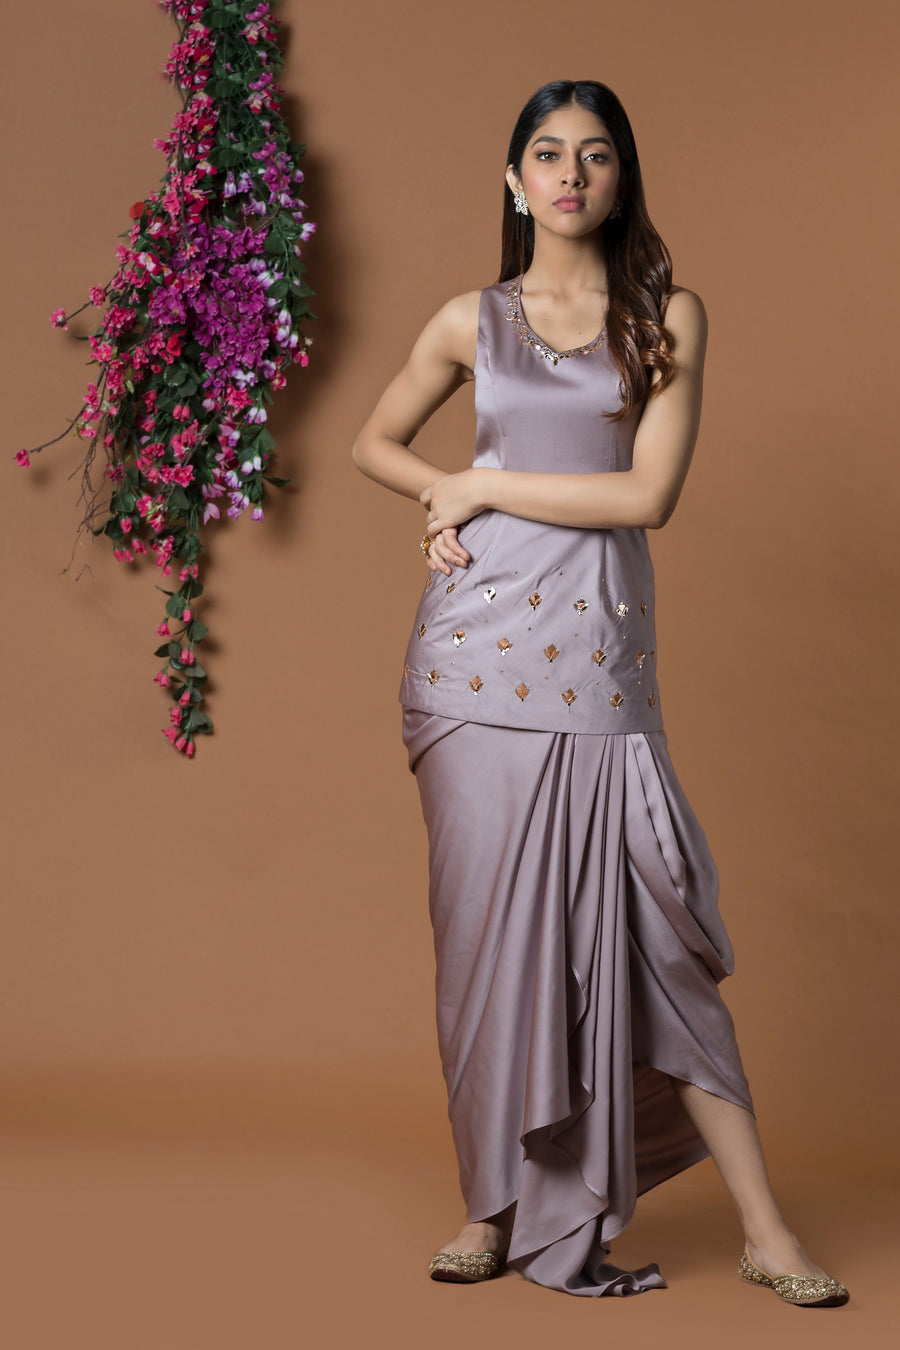 Dhoti Skirt & Short Kurta | Indian Wedding Wear for sangeet & mehndi.